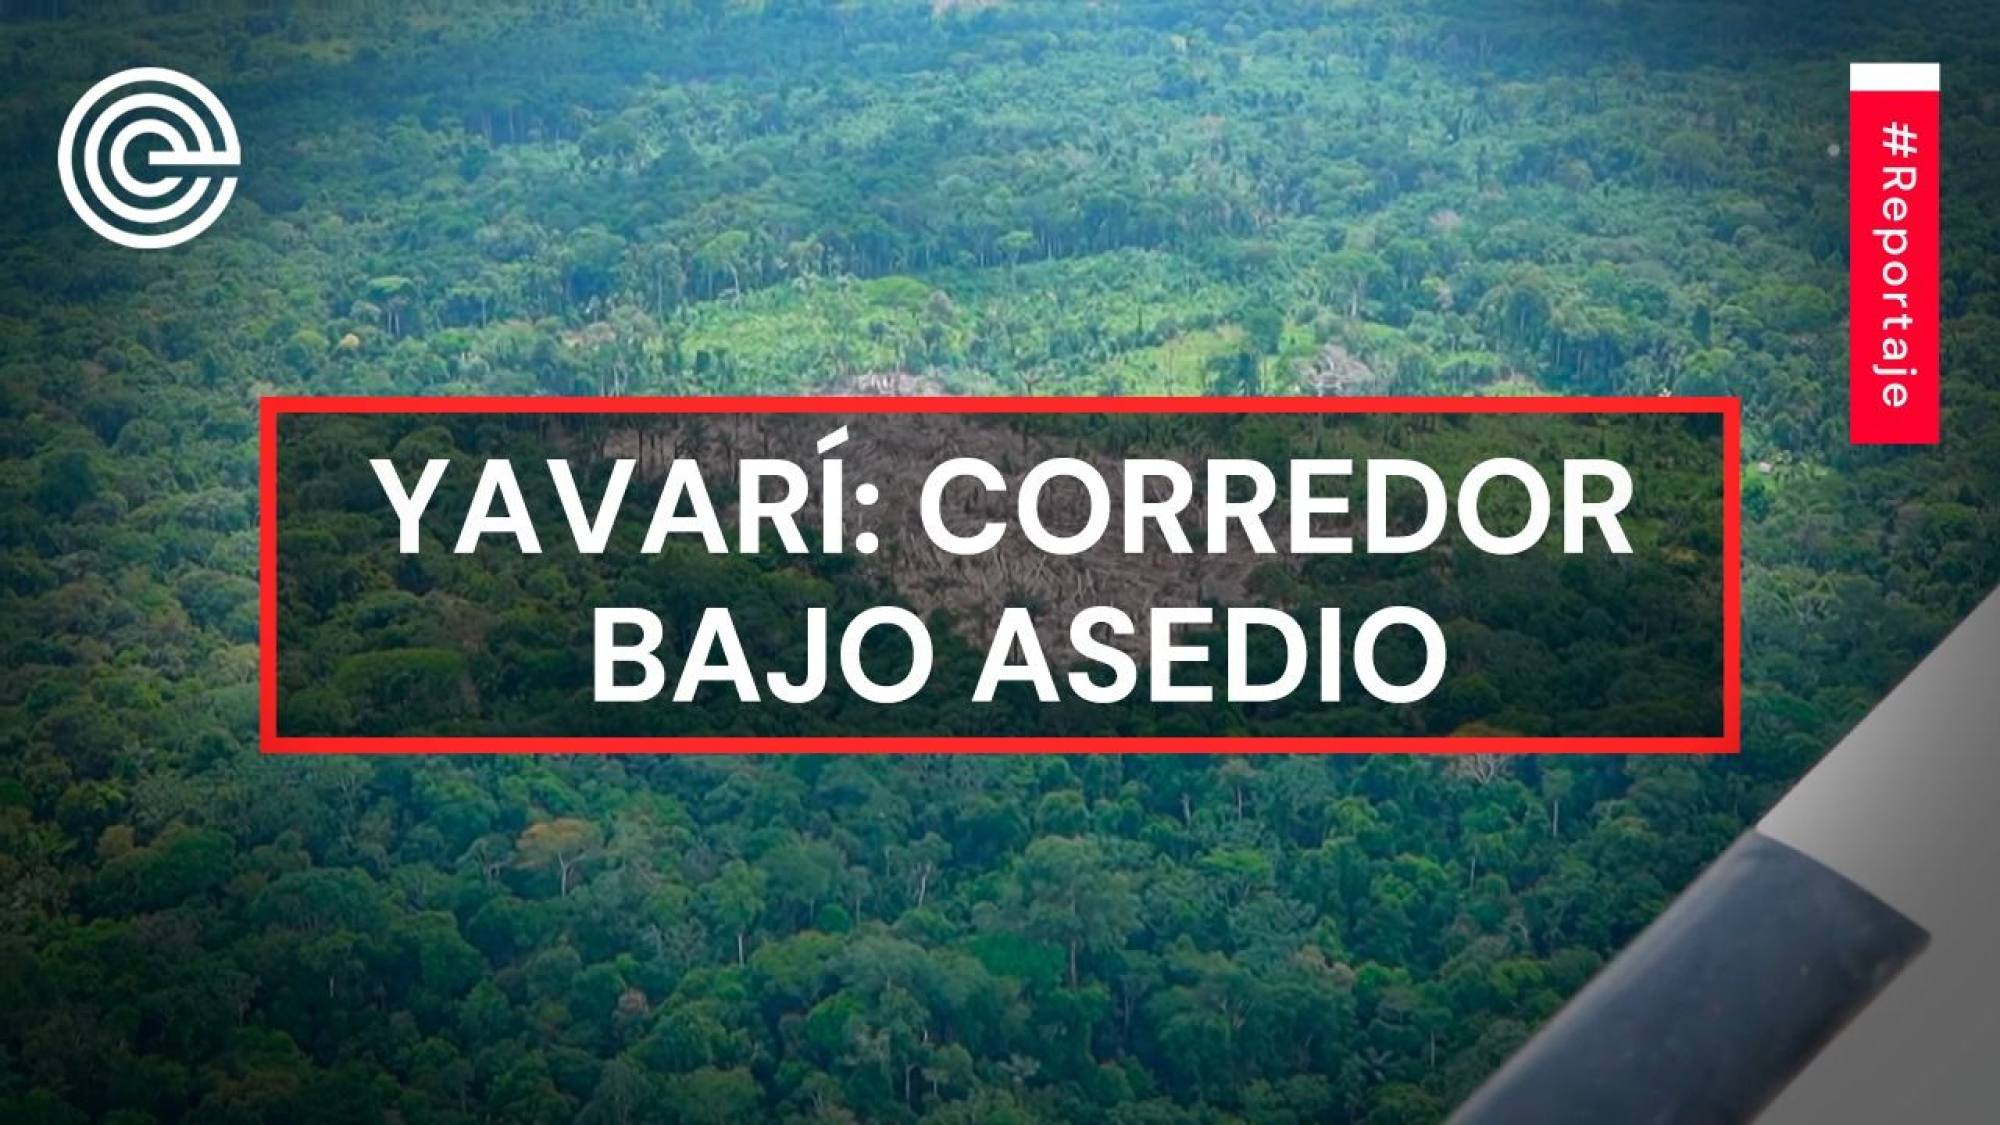 Yavarí: corredor bajo asedio, Epicentro TV